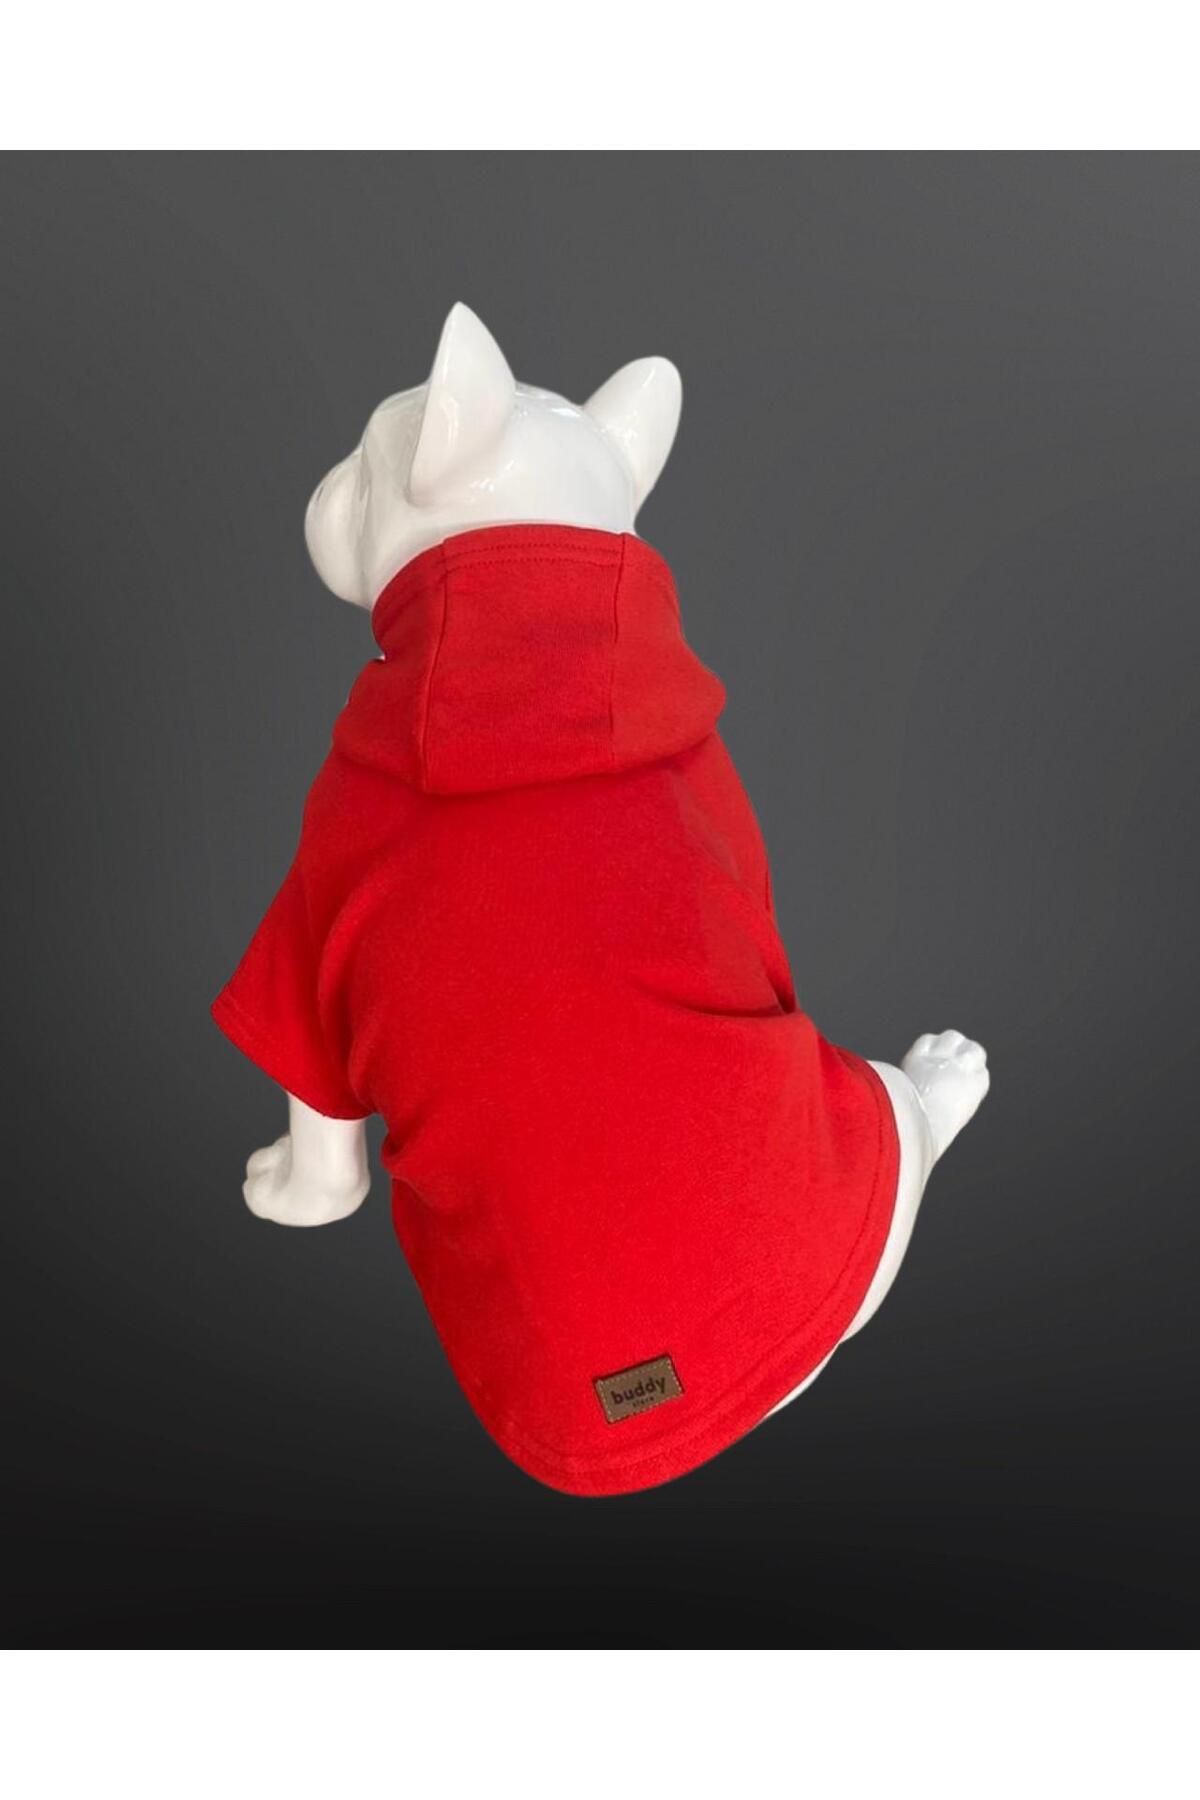 Buddy Store Kedi & Köpek Kıyafeti Sweatshirt - Baskısız Kırmızı Sweatshirt